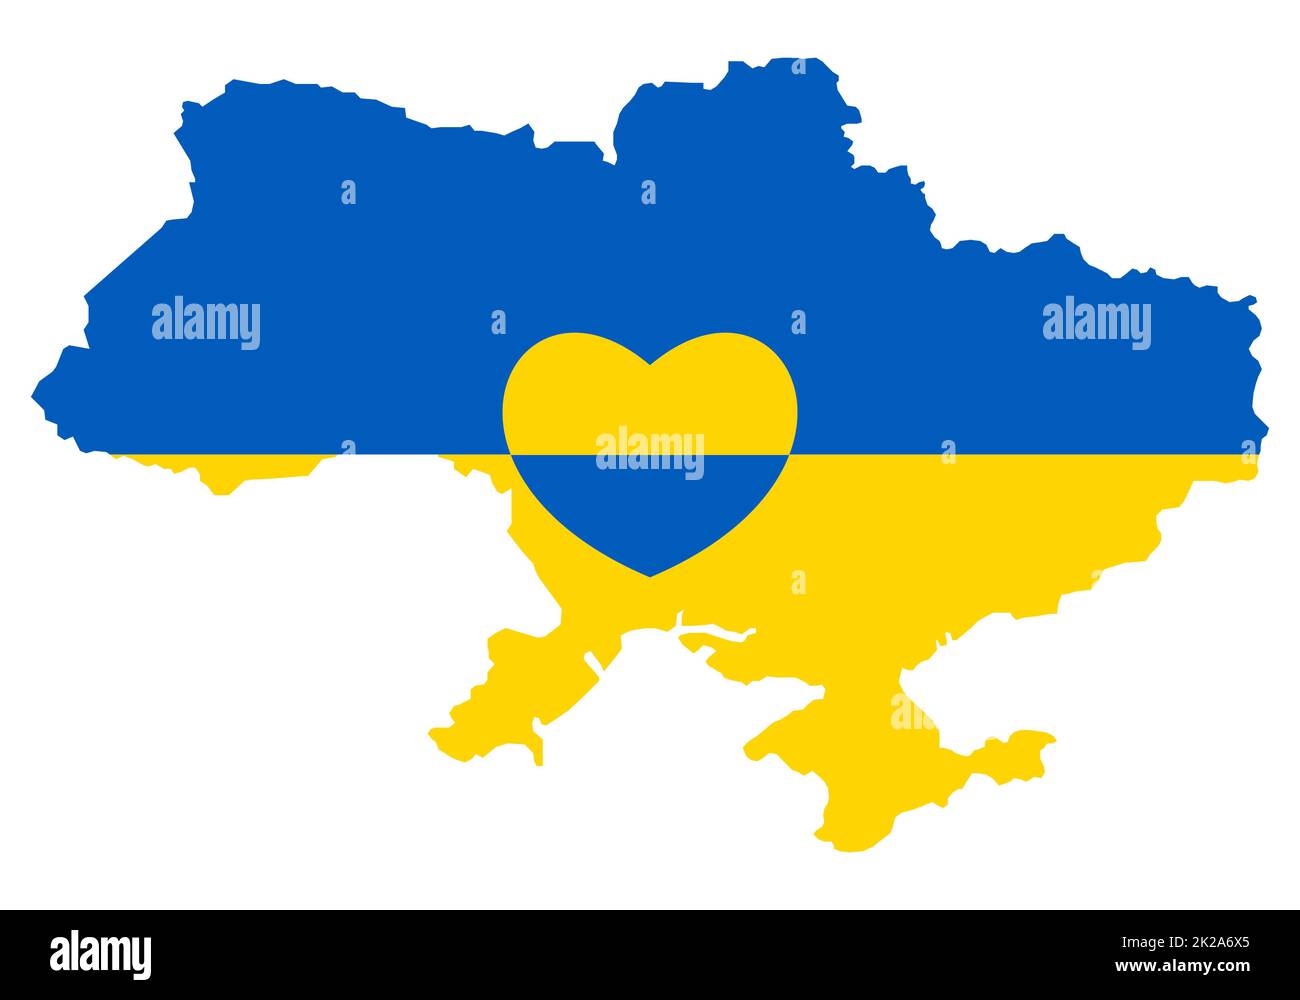 Ukrainische Karte mit Herzsymbol. Abstrakte patriotische ukrainische Flagge mit Liebessymbol. Blaue und gelbe konzeptionelle Idee - mit der Ukraine im Herzen. Unterstützung des Landes während der Besatzung. Beenden Sie den Krieg. Stockfoto